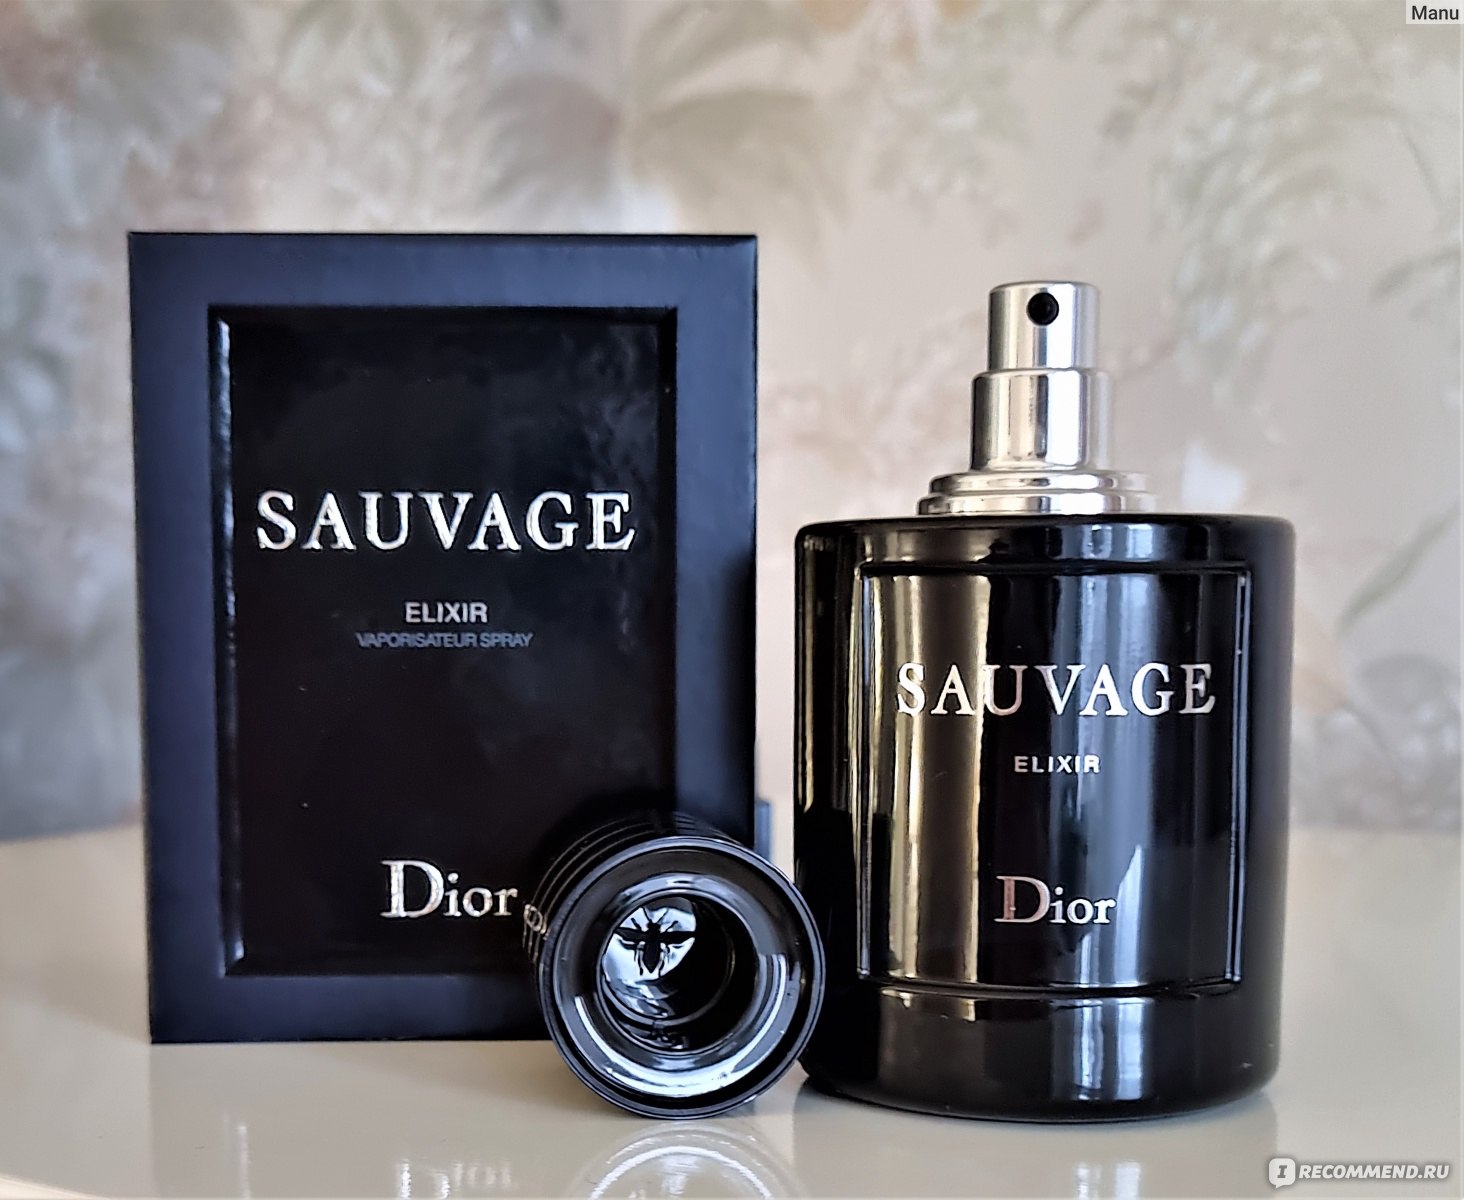 Christian Dior Eau Sauvage Parfum  купить в Москве мужские духи  парфюмерная и туалетная вода Диор Саваж по лучшей цене в интернетмагазине  Randewoo